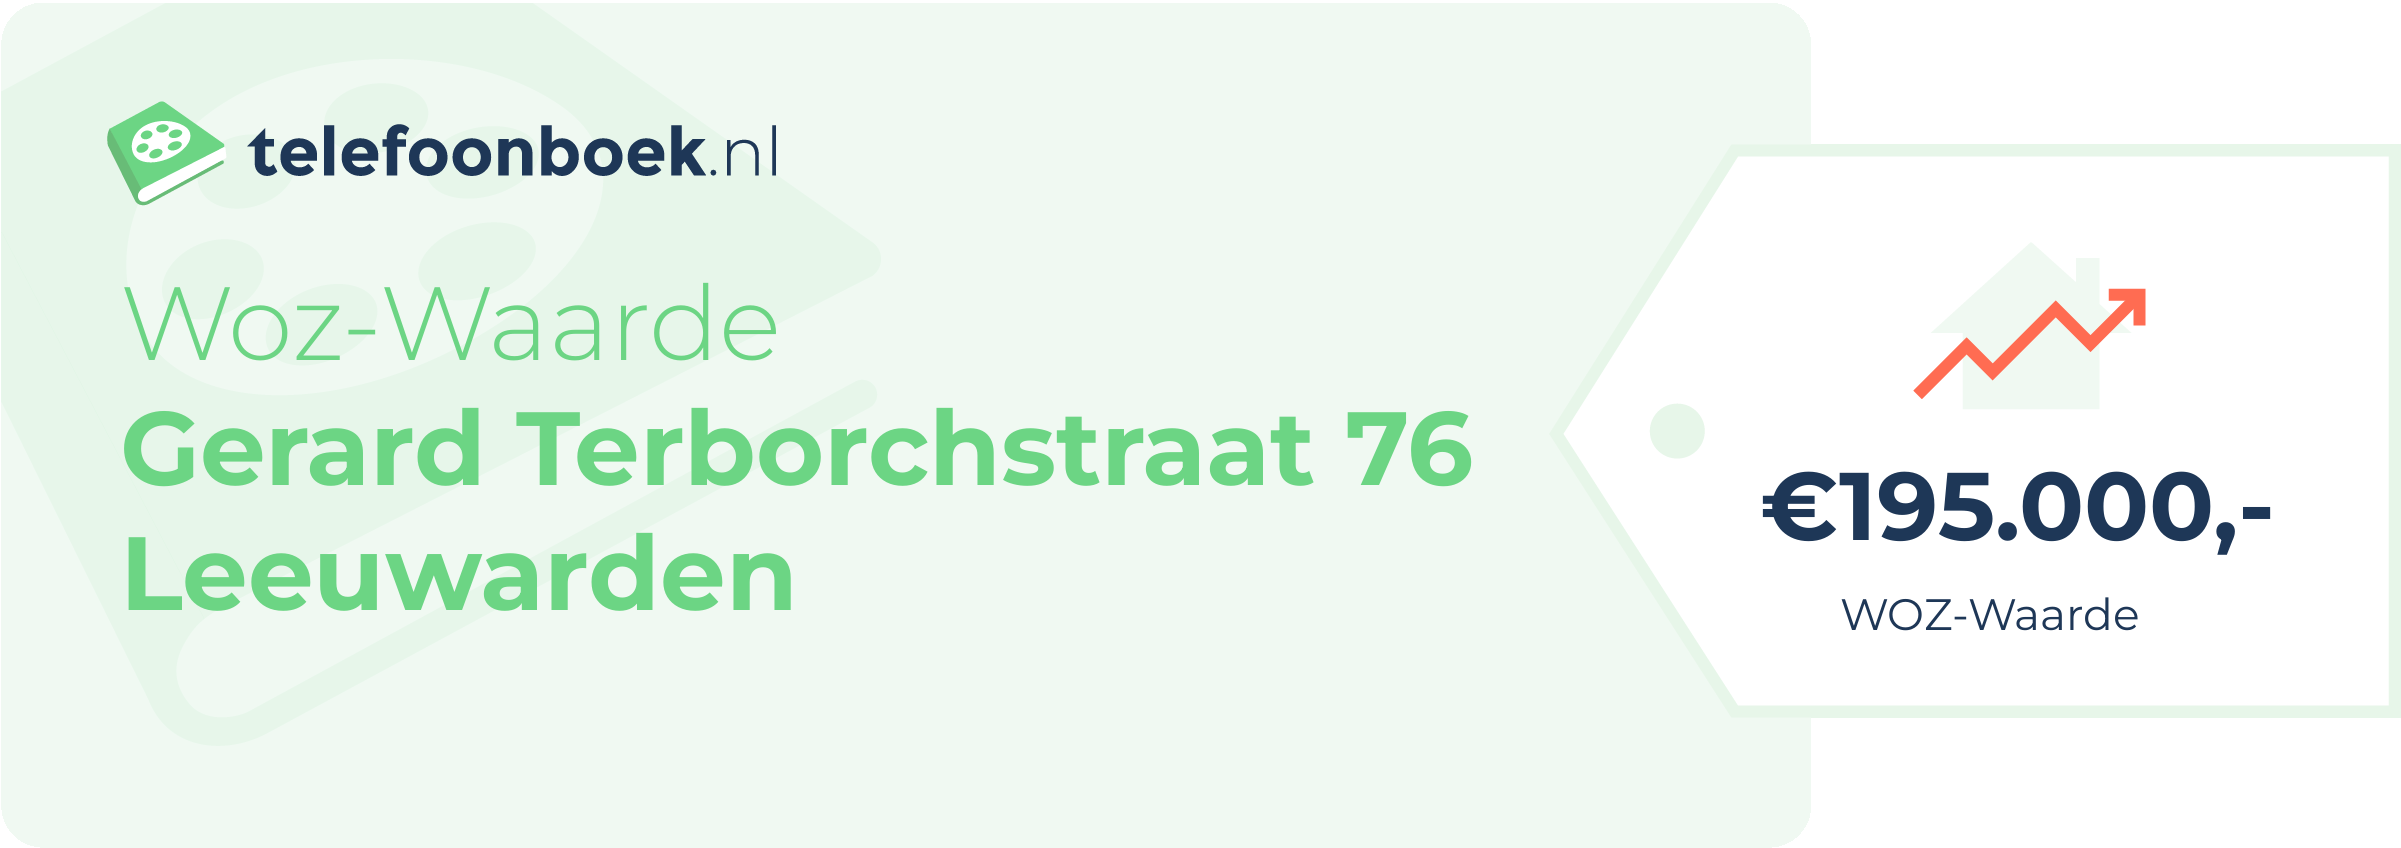 WOZ-waarde Gerard Terborchstraat 76 Leeuwarden